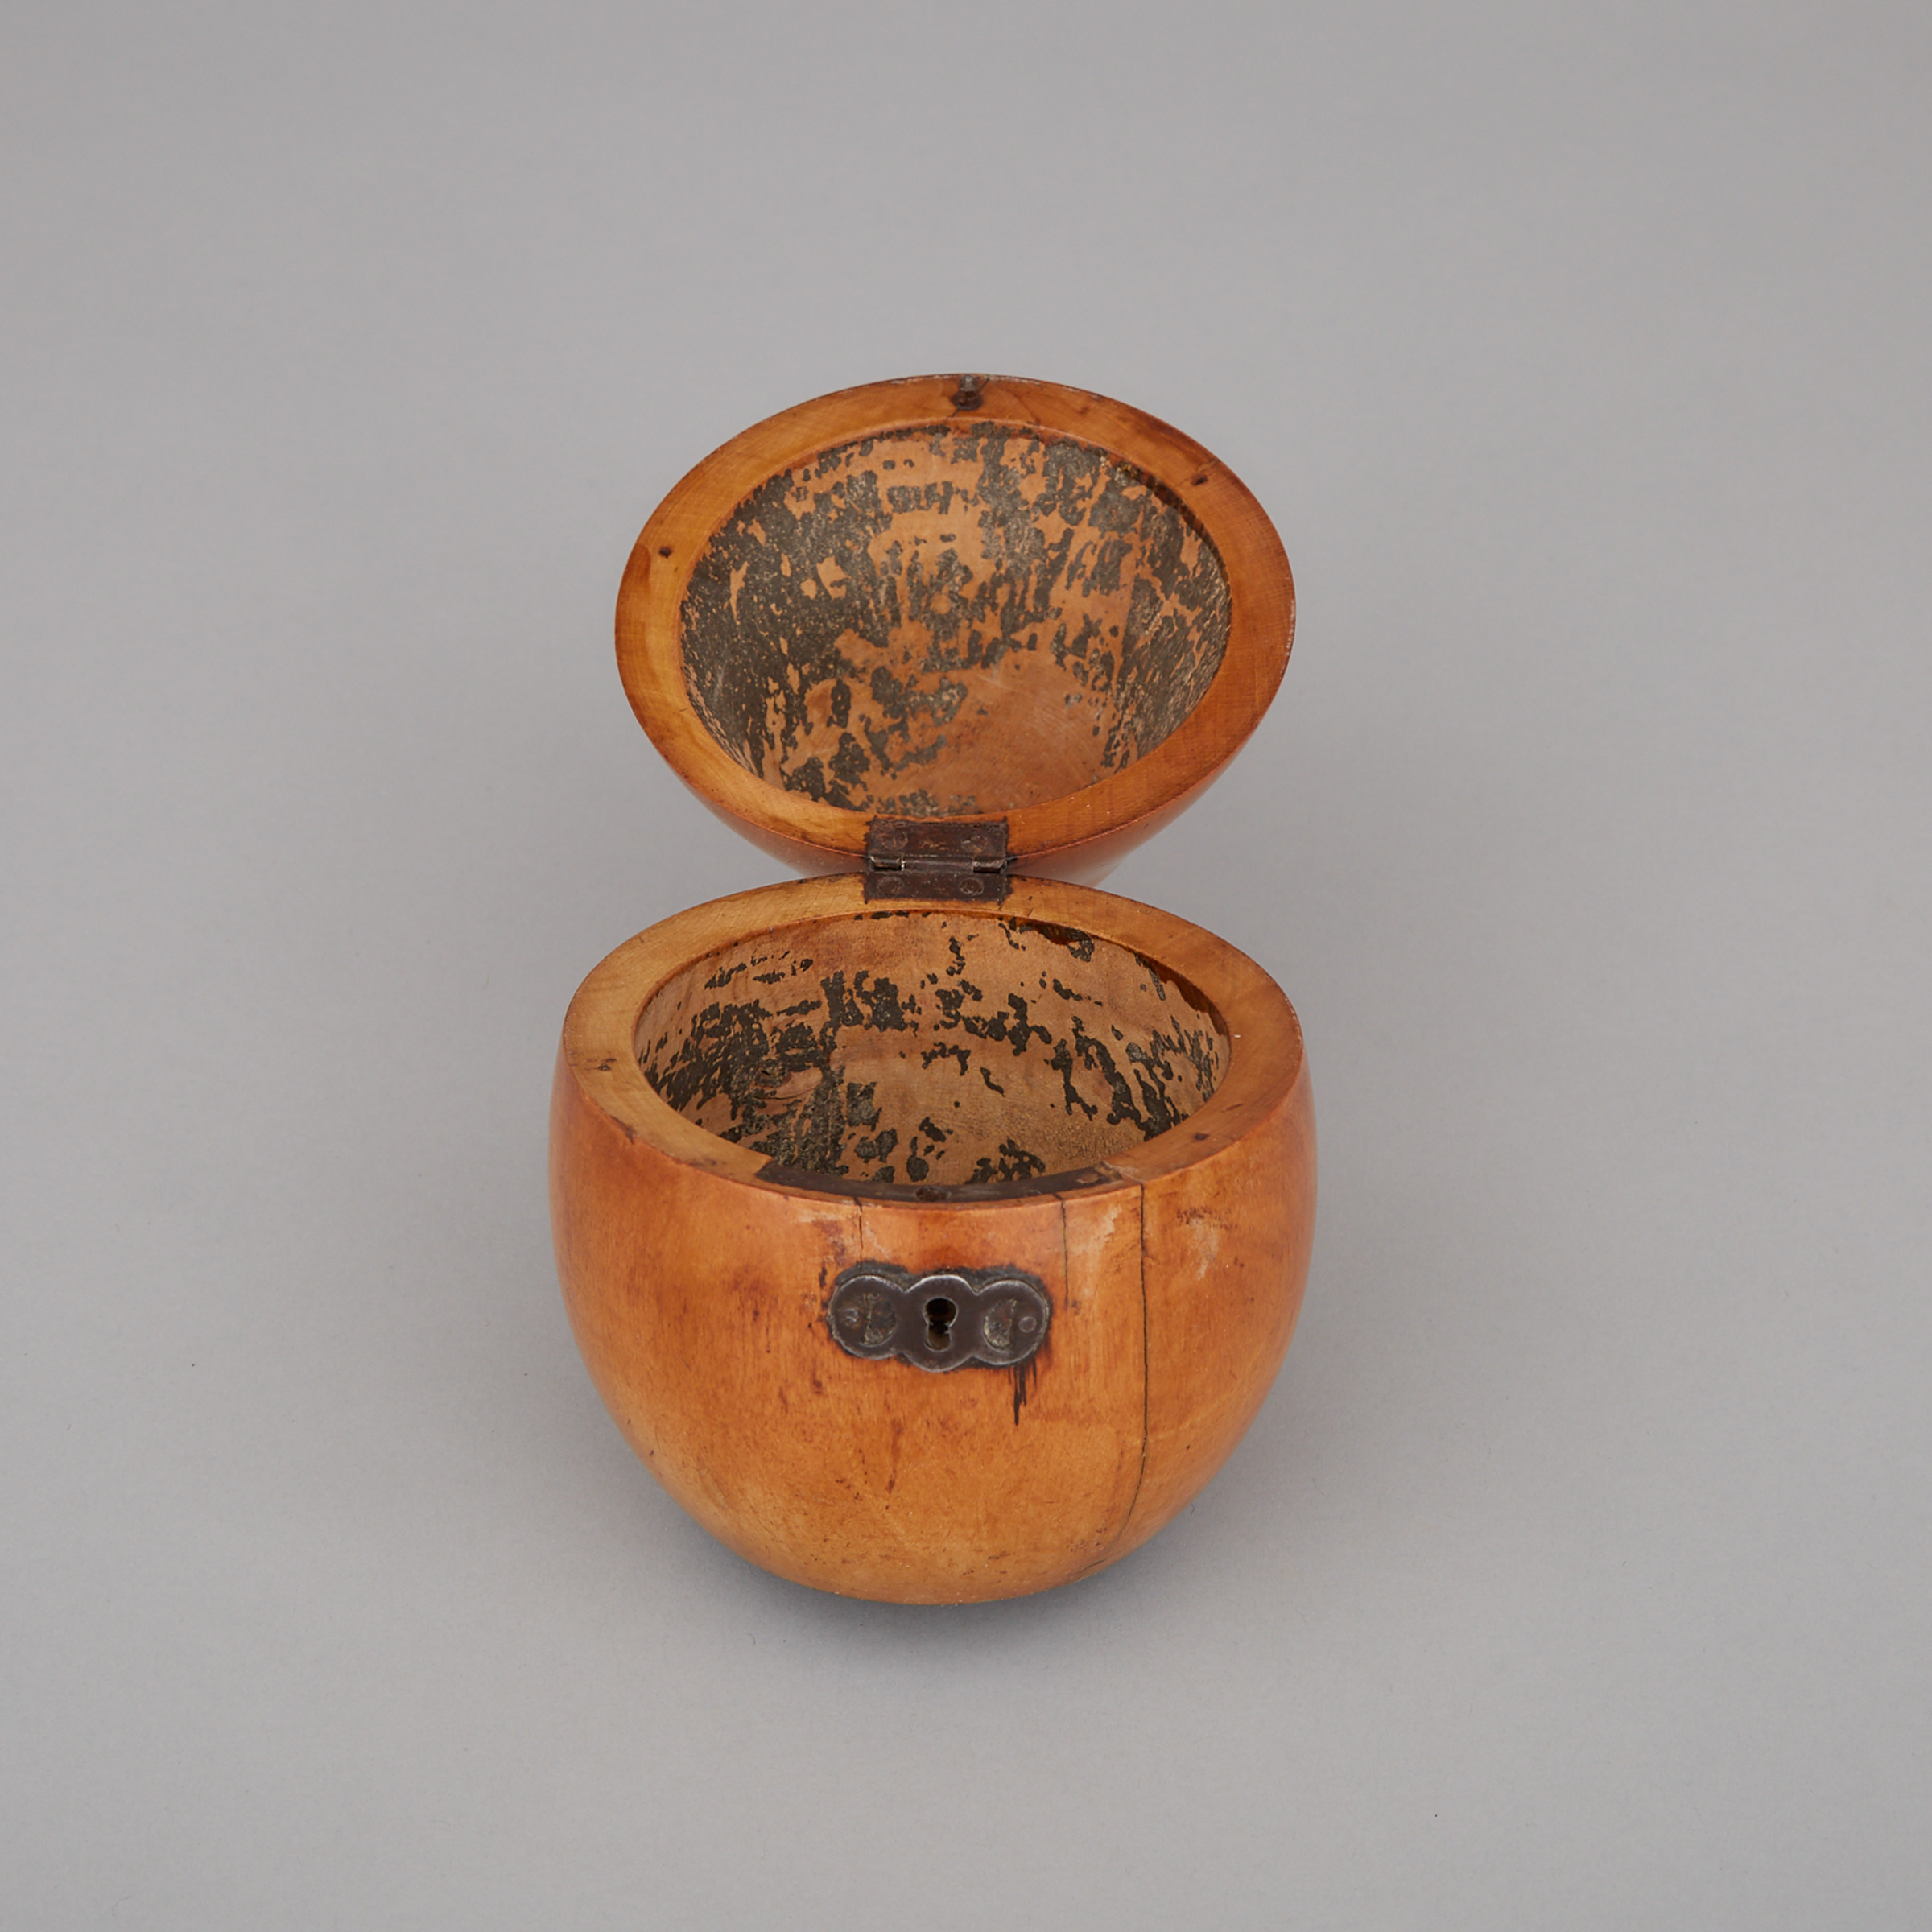 George III Pearwood Pear Form Tea Caddy, c.1800